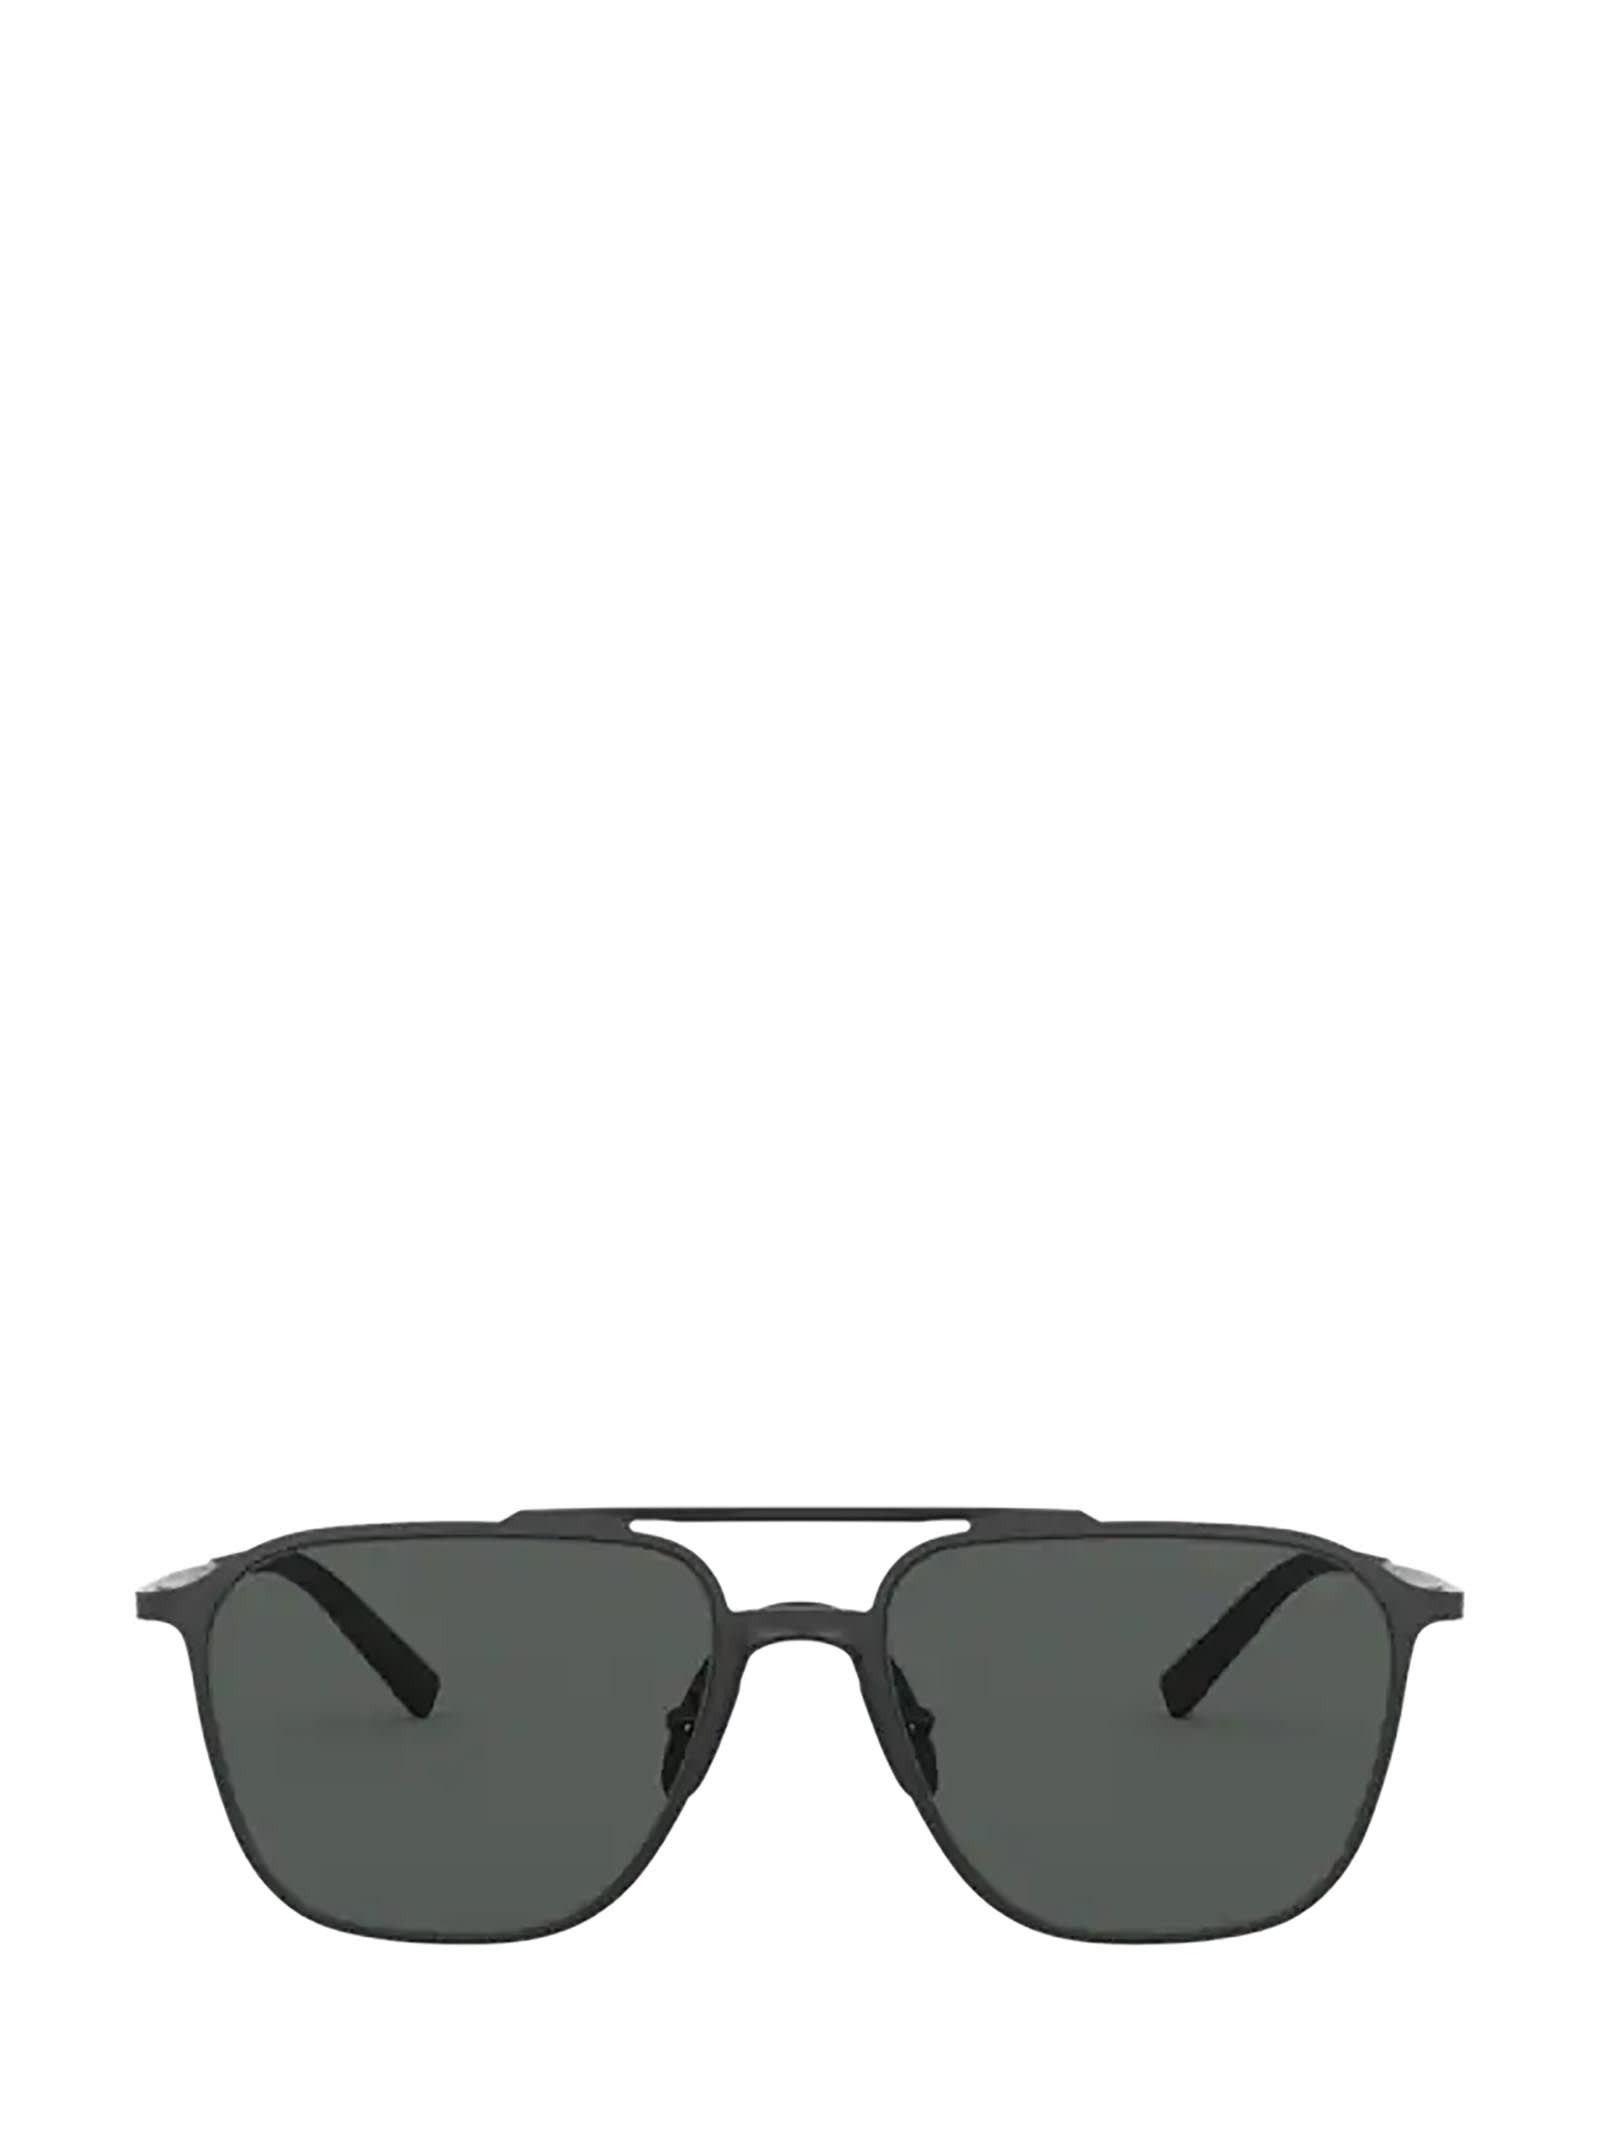 Giorgio Armani Giorgio Armani Ar6110 Matte Black Sunglasses